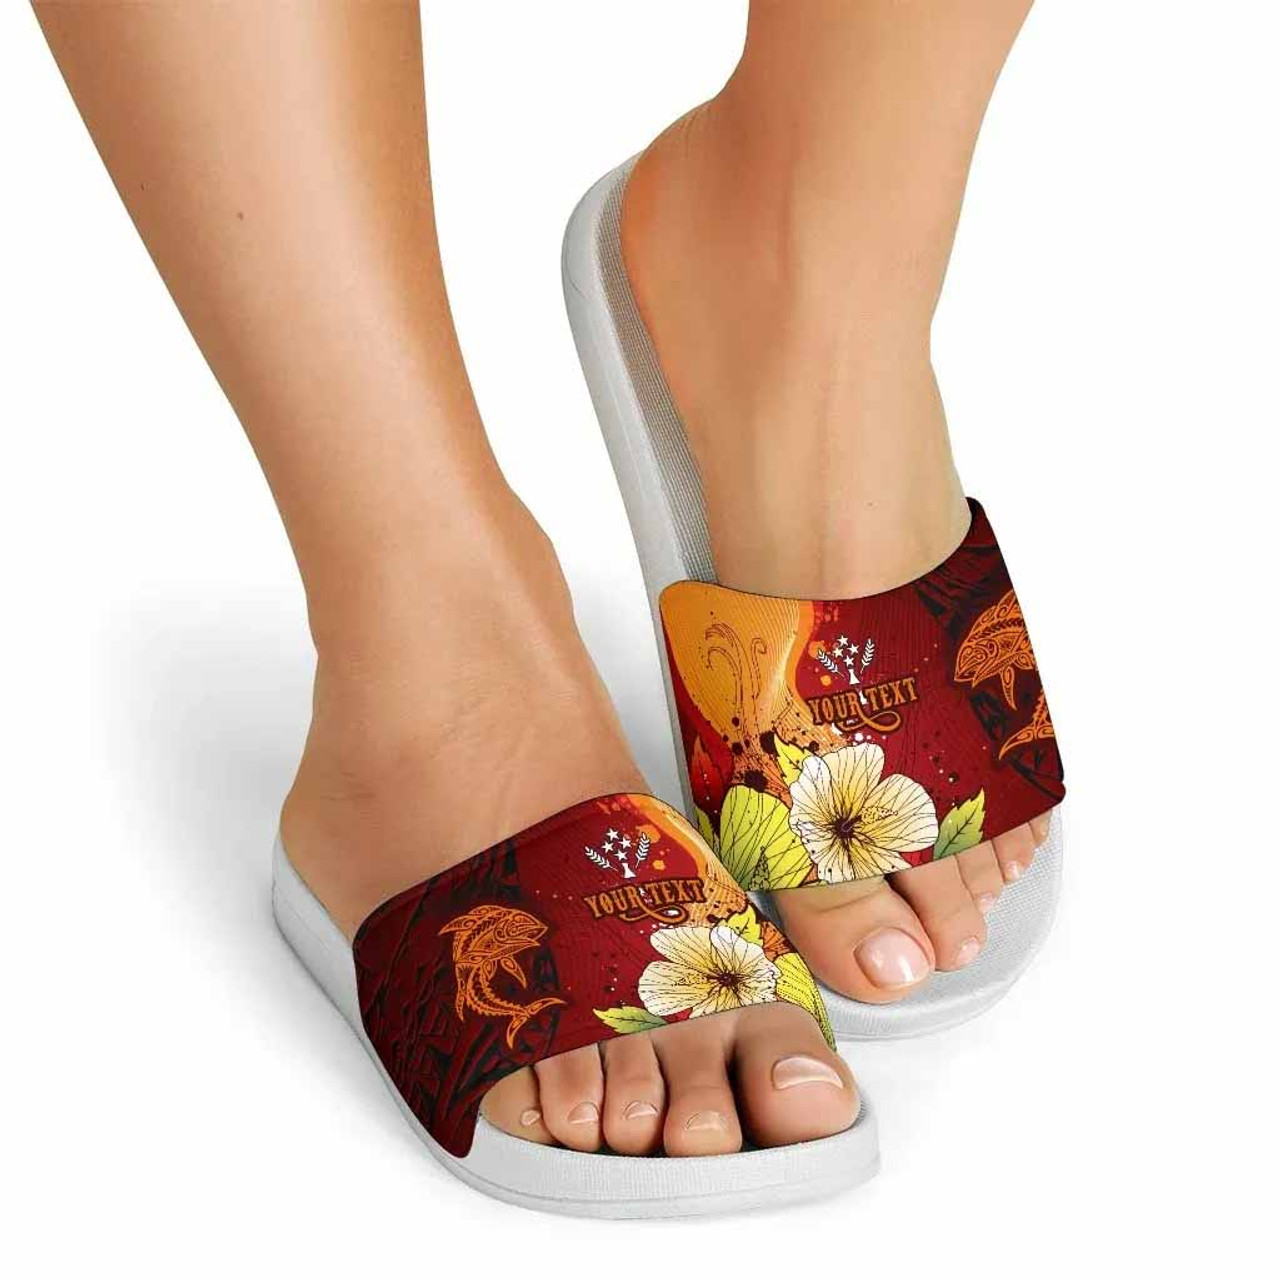 Kosrae Custom Personalised Slide Sandals - Tribal Tuna Fish 5